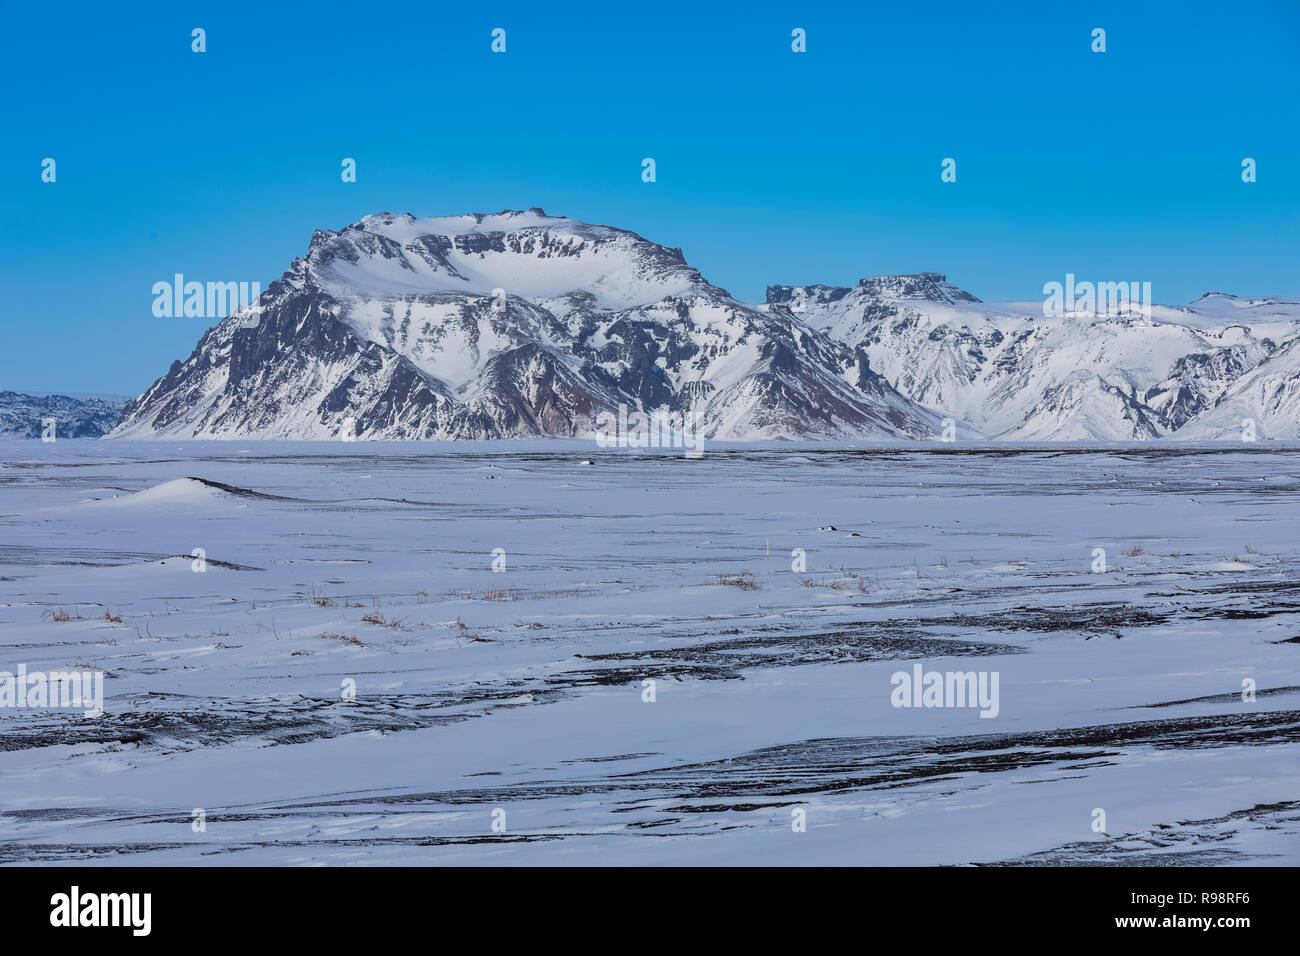 Mýrdalssandur dilavamento plain vicino ghiacciaio Mýrdalsjökull con Hafursey montagna, dove una parte di Rogue uno: Star Wars Storia è stata filmata, in Islanda, in wint Foto Stock